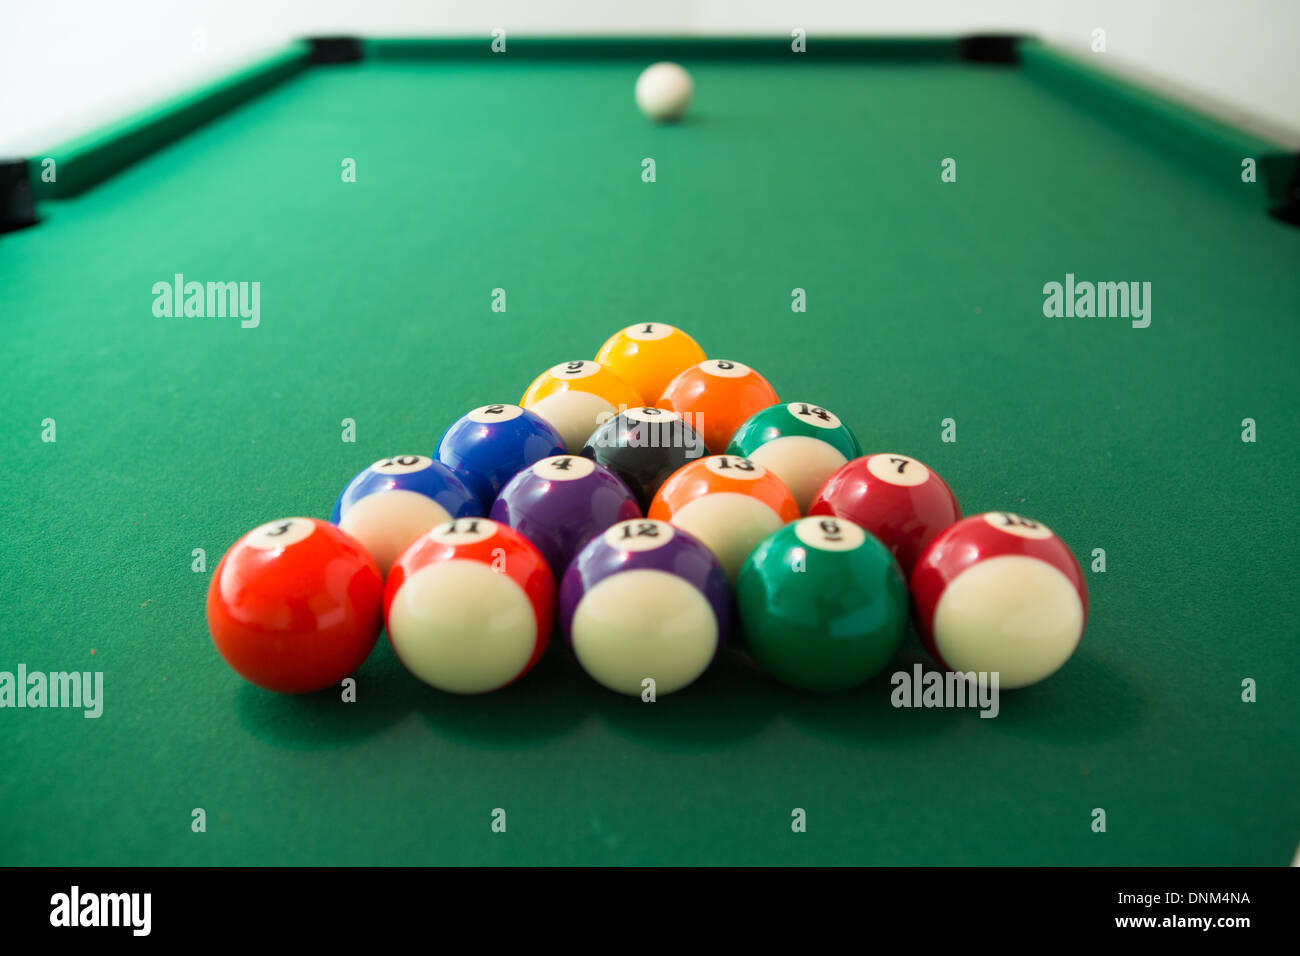 Pool balls arranged for break at start of game Stock Photo